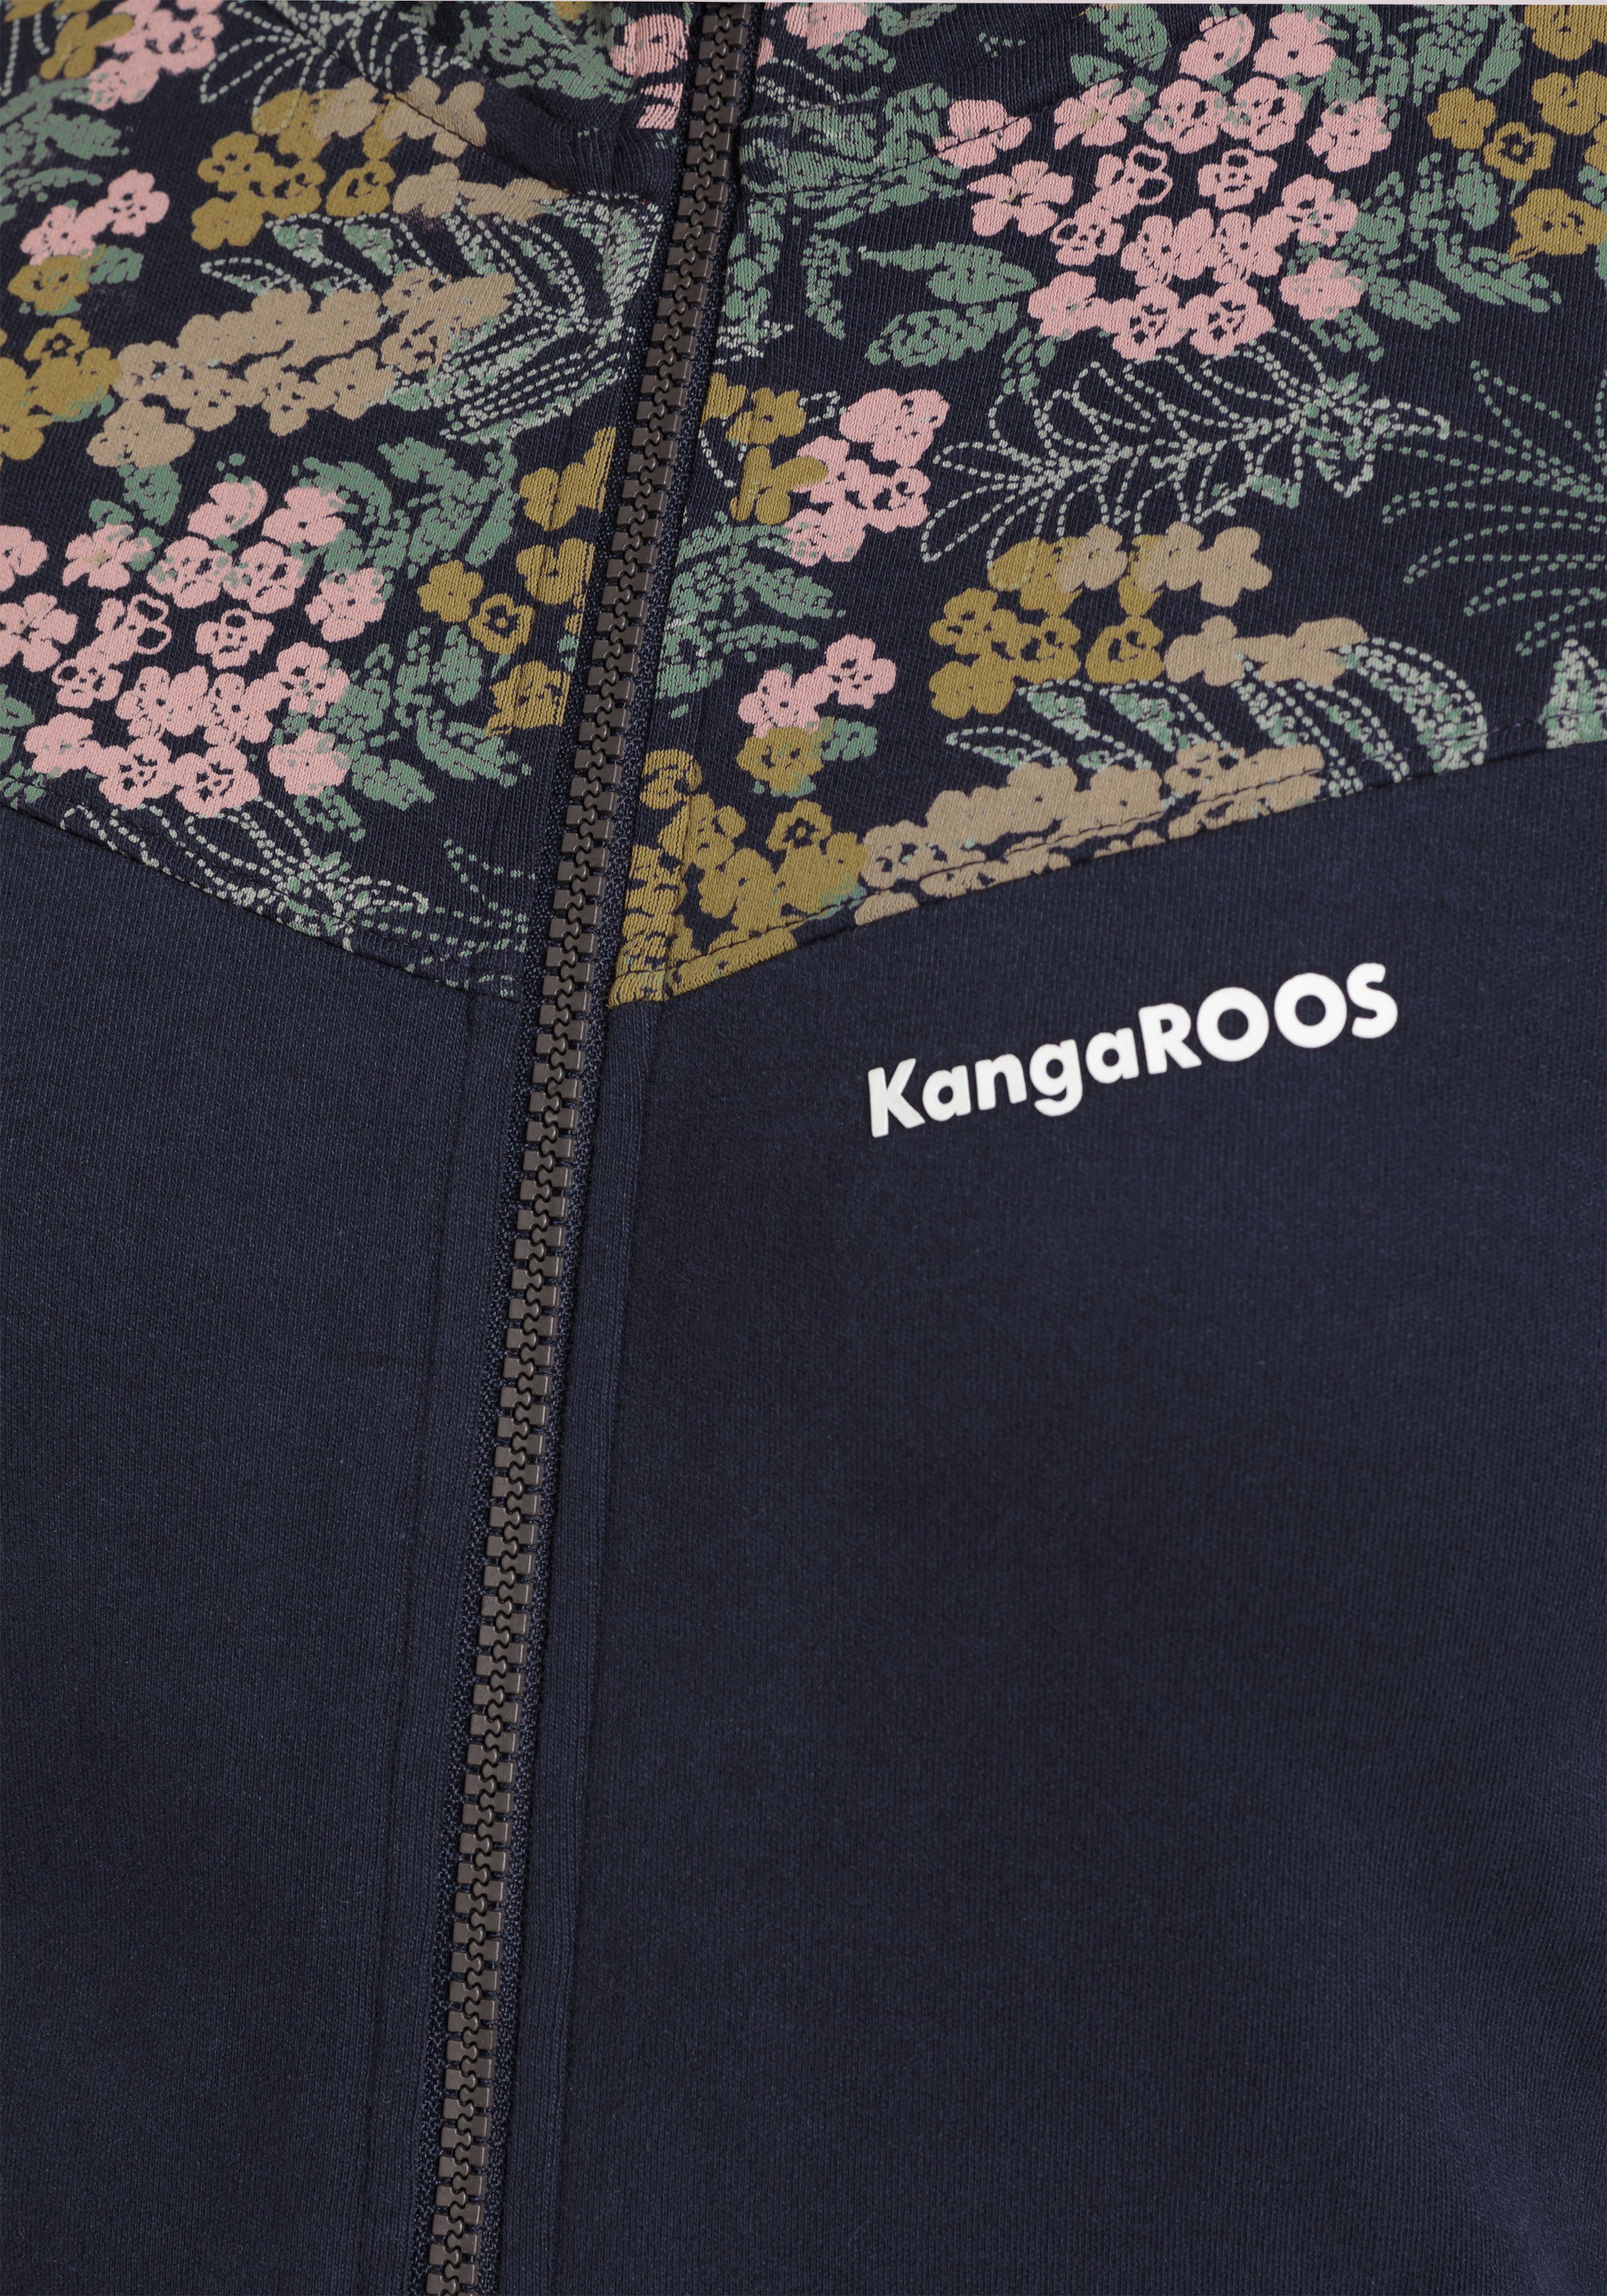 mit Alloverdruck-NEUE-KOLLEKTION KangaROOS Kapuzensweatjacke Blumen